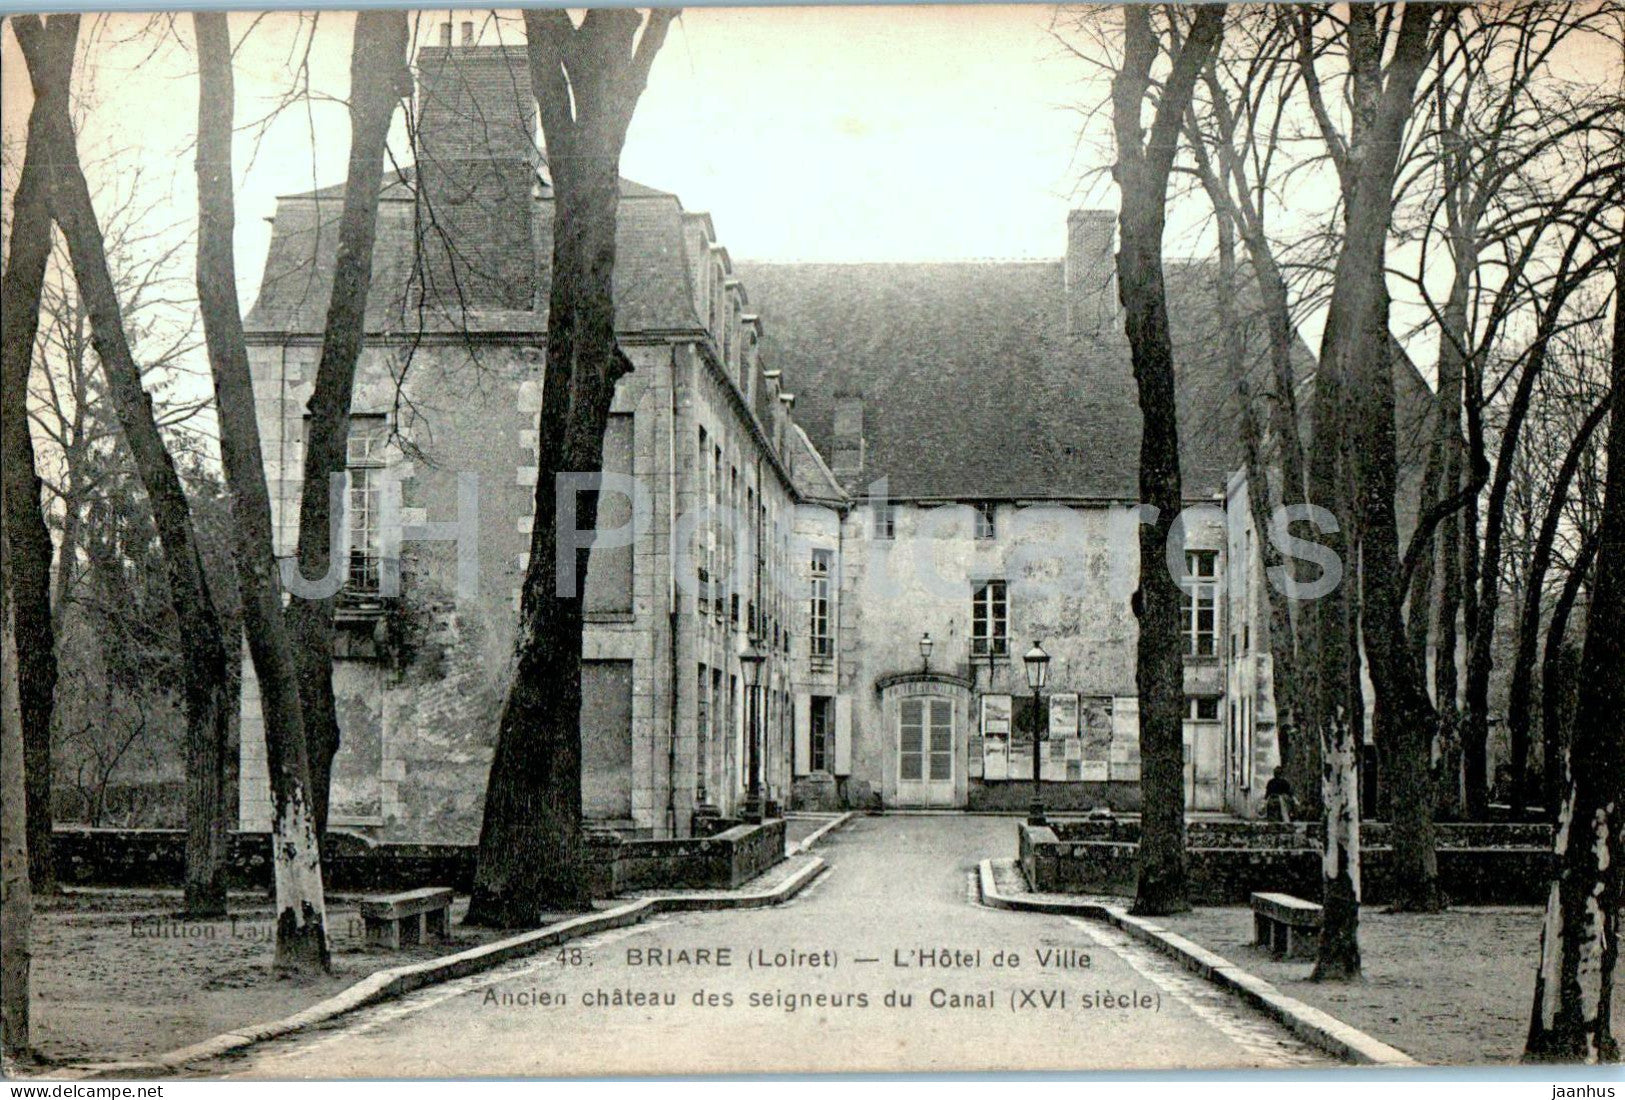 Briare - L'Hotel de Ville - Ancien chateau des seigneurs du Canal - town hall - 48 - old postcard - France - used - JH Postcards